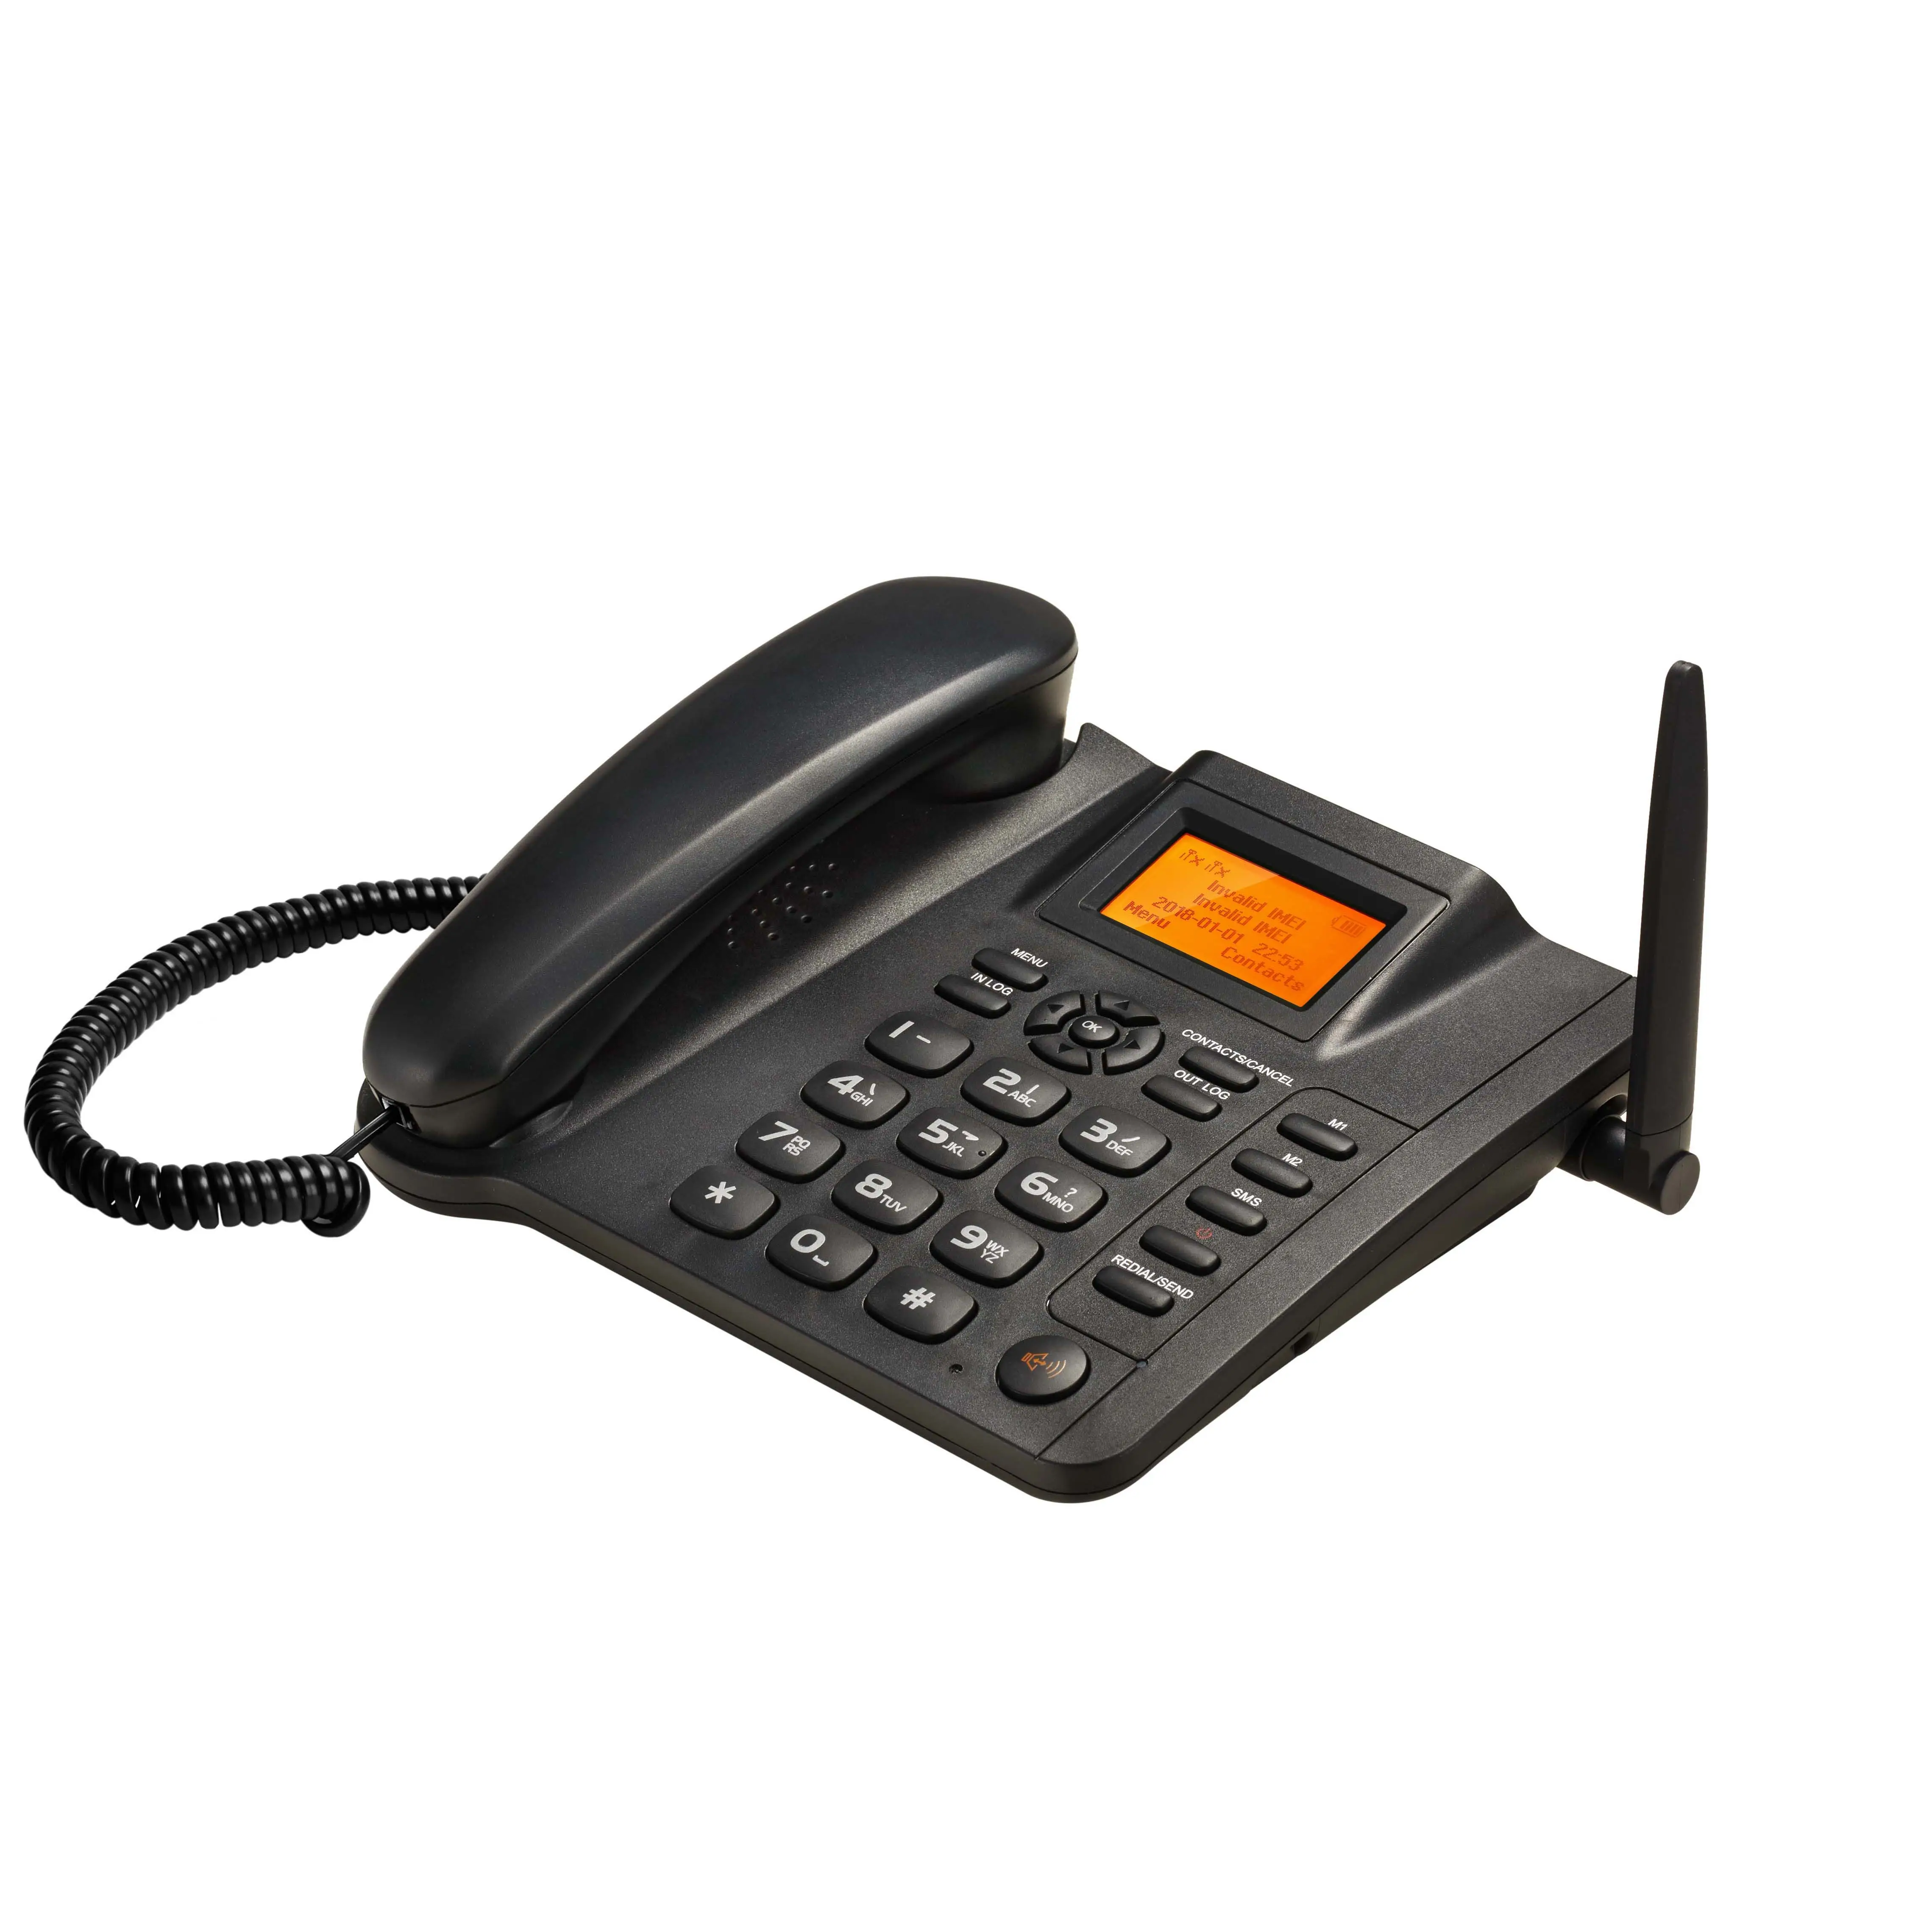 ESN-10Aデュアル2 SIMカードGSM2g固定無線電話FWPgsmデスクトップ電話